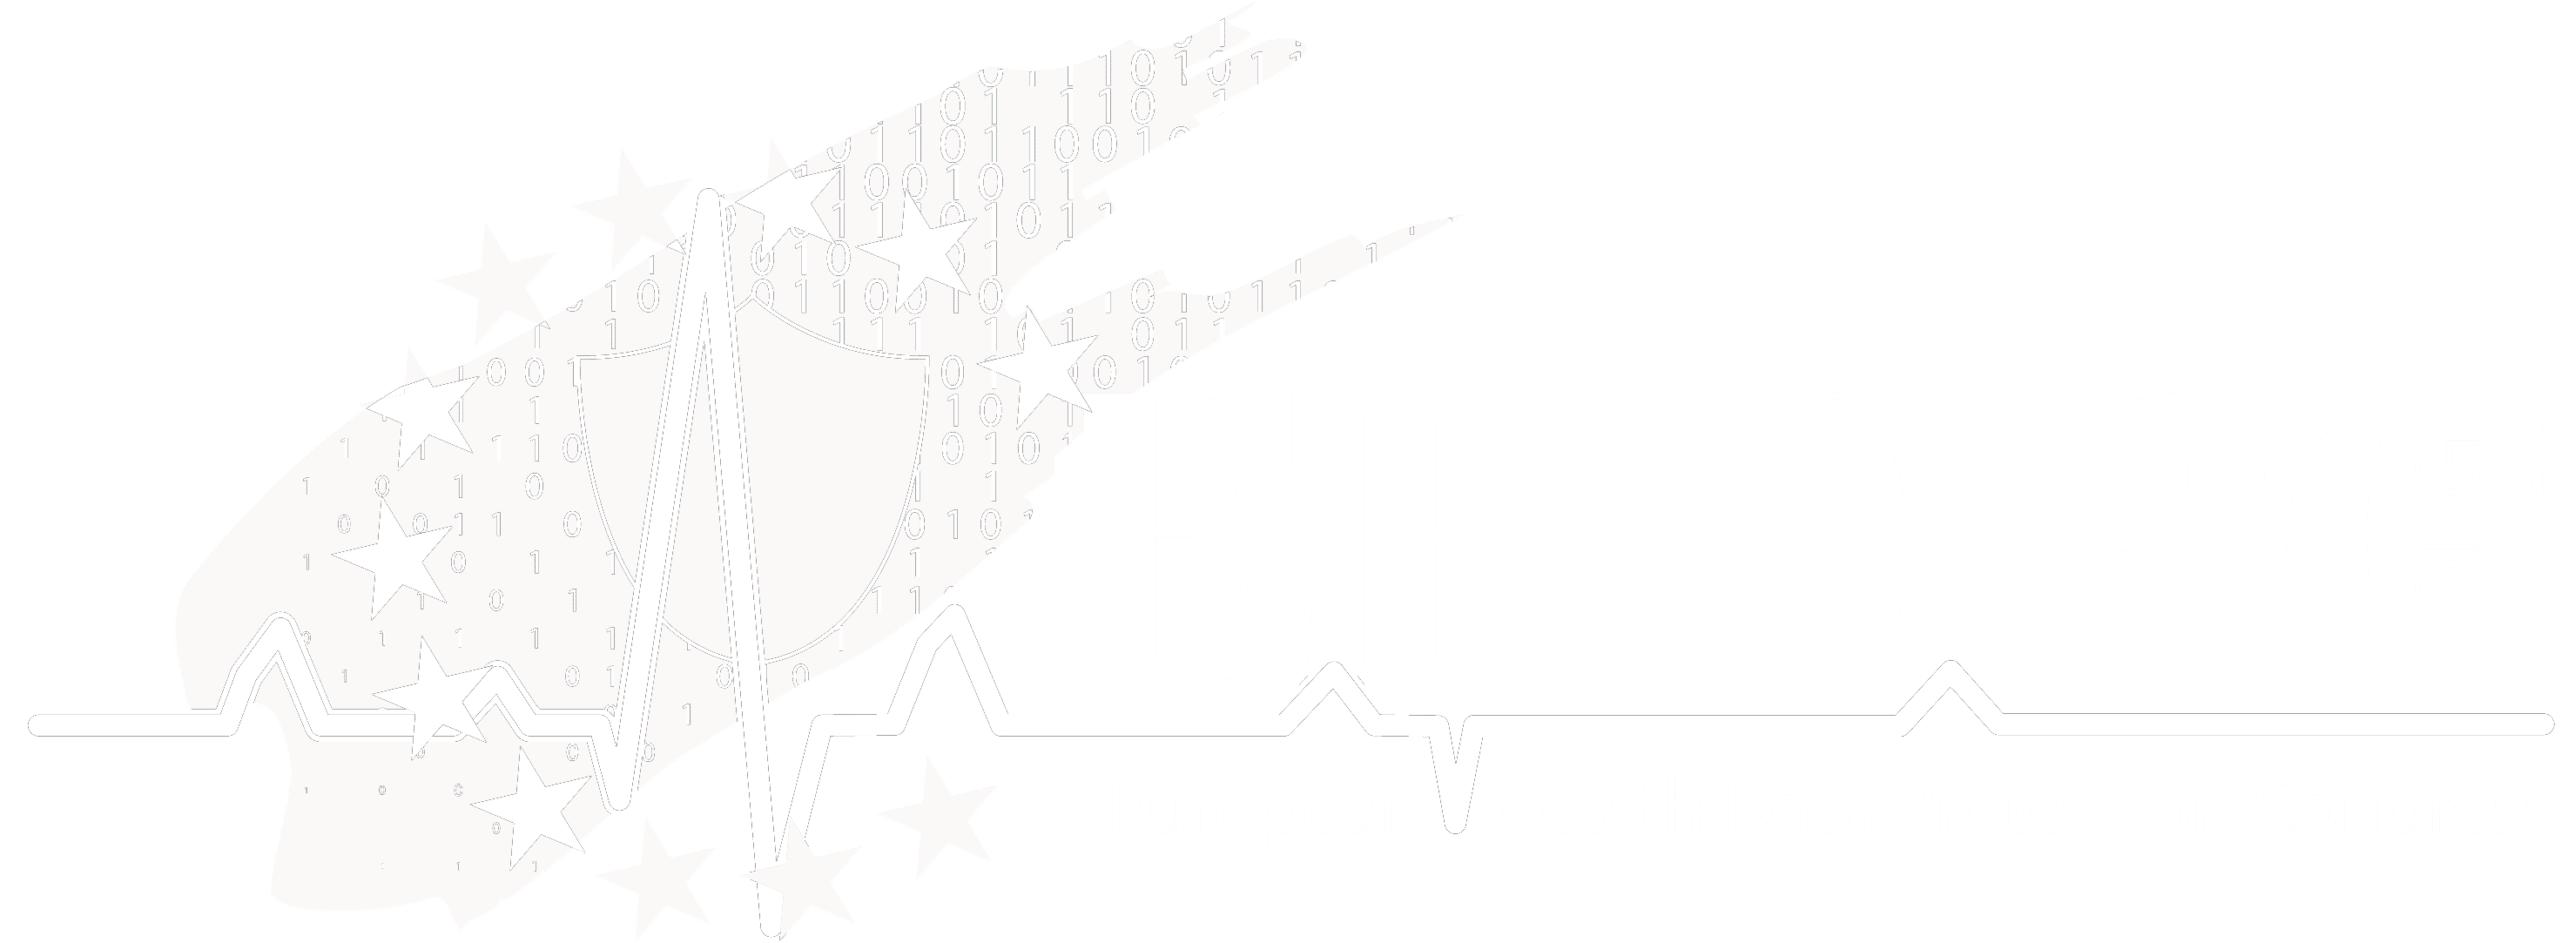 EHDPC logo